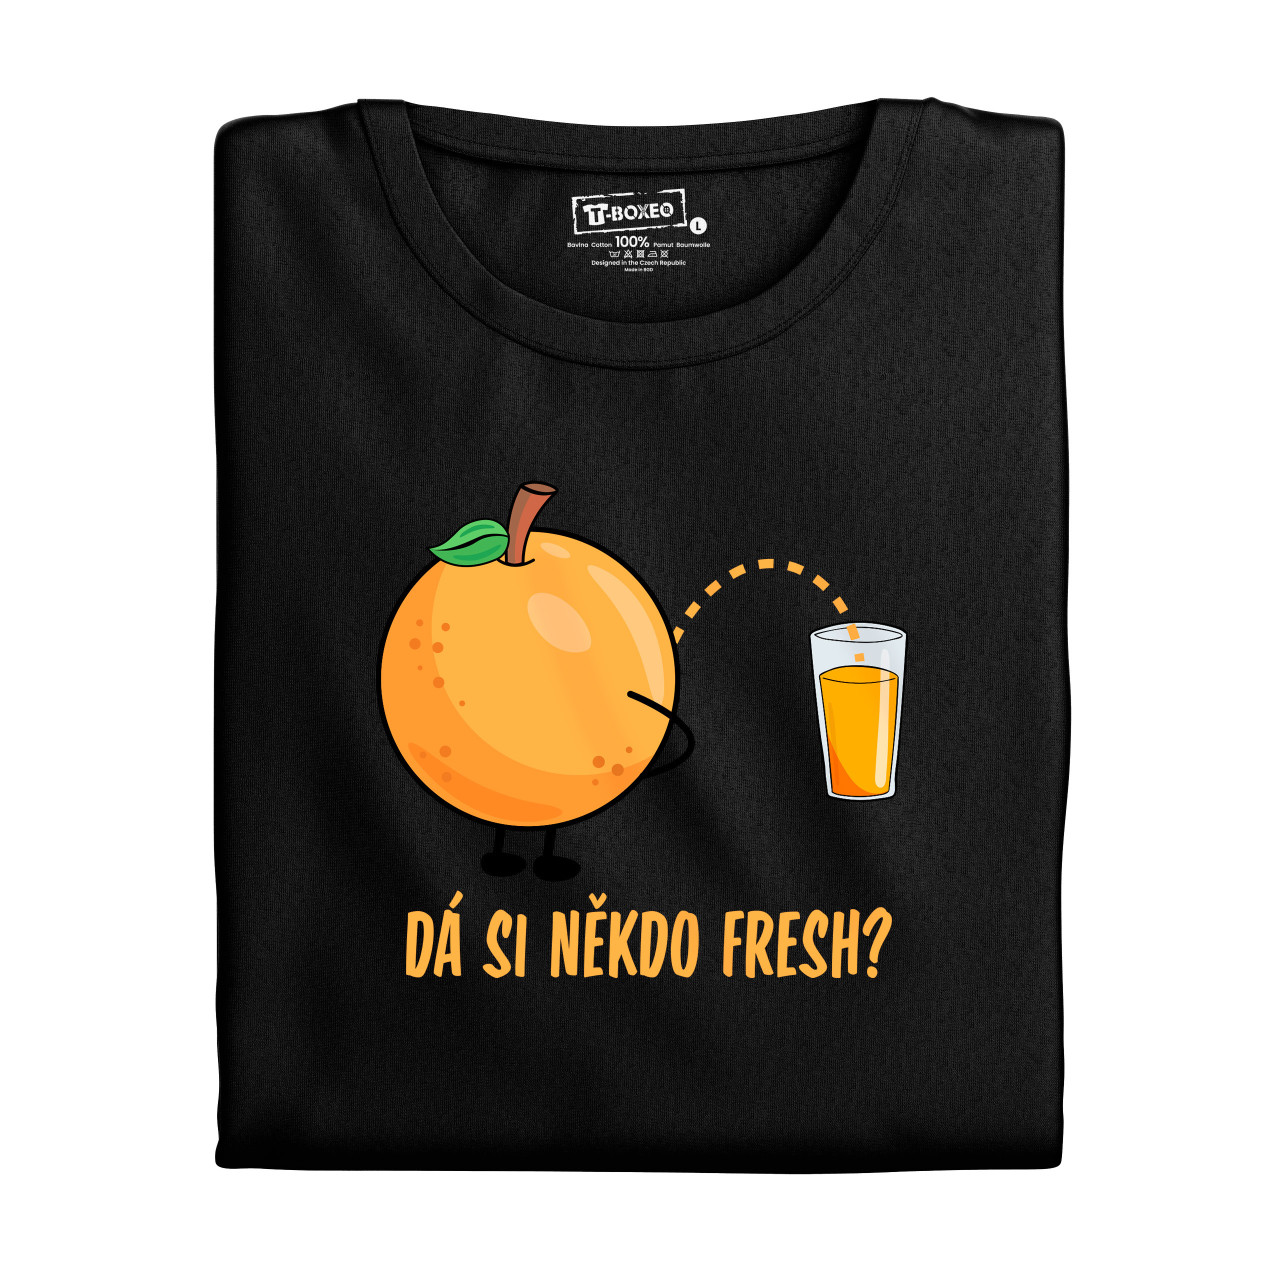 Pánské tričko s potiskem “Dá si někdo fresh?”